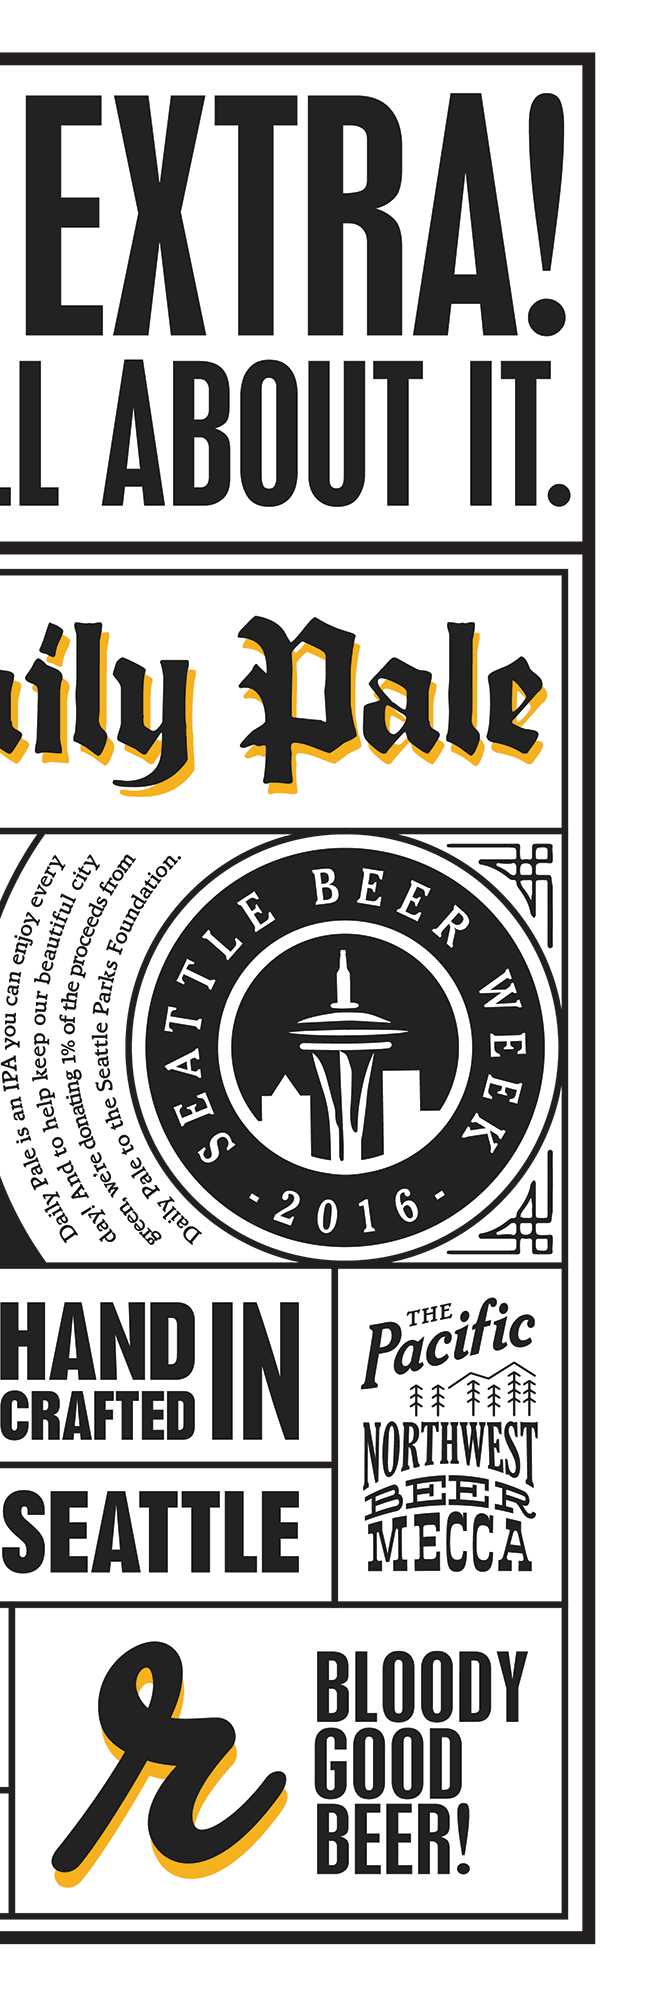 Seattle Beer Week 2015